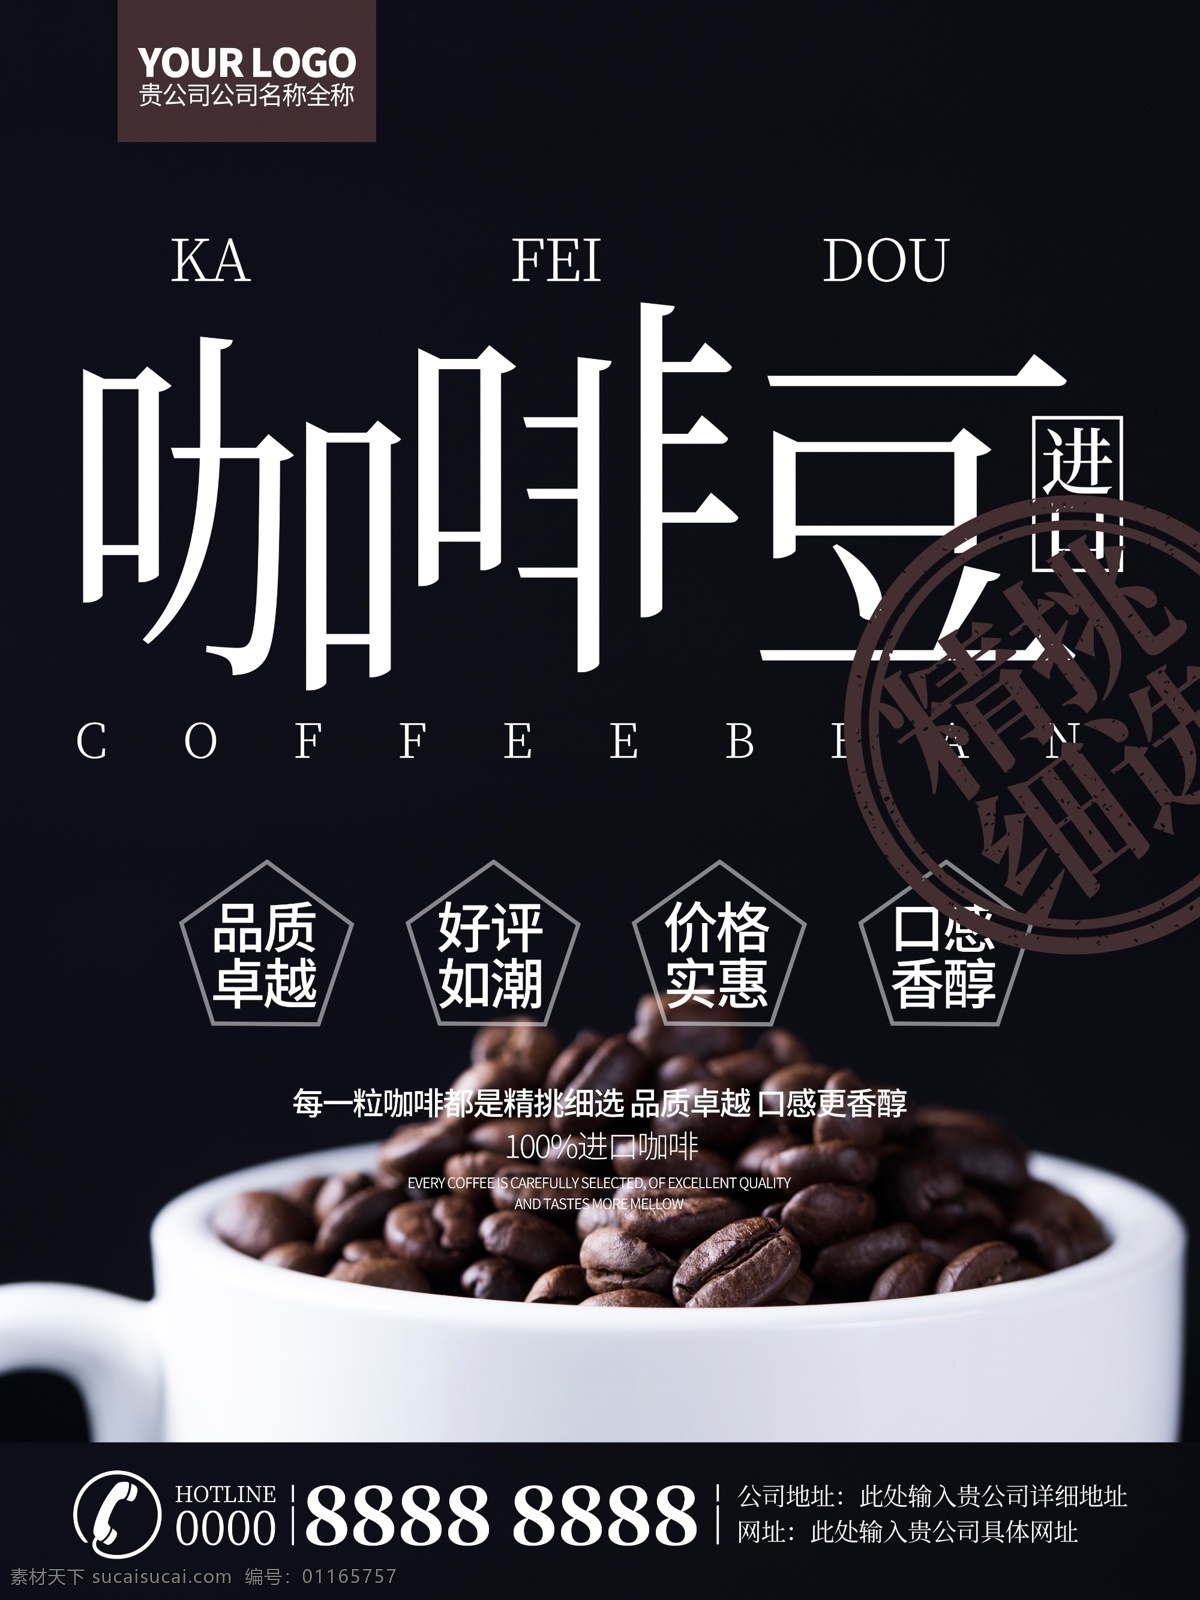 简约 进口 咖啡豆 商业 海报 咖啡豆海报 咖啡豆背景 咖啡豆图片 咖啡海报 咖啡背景 咖啡